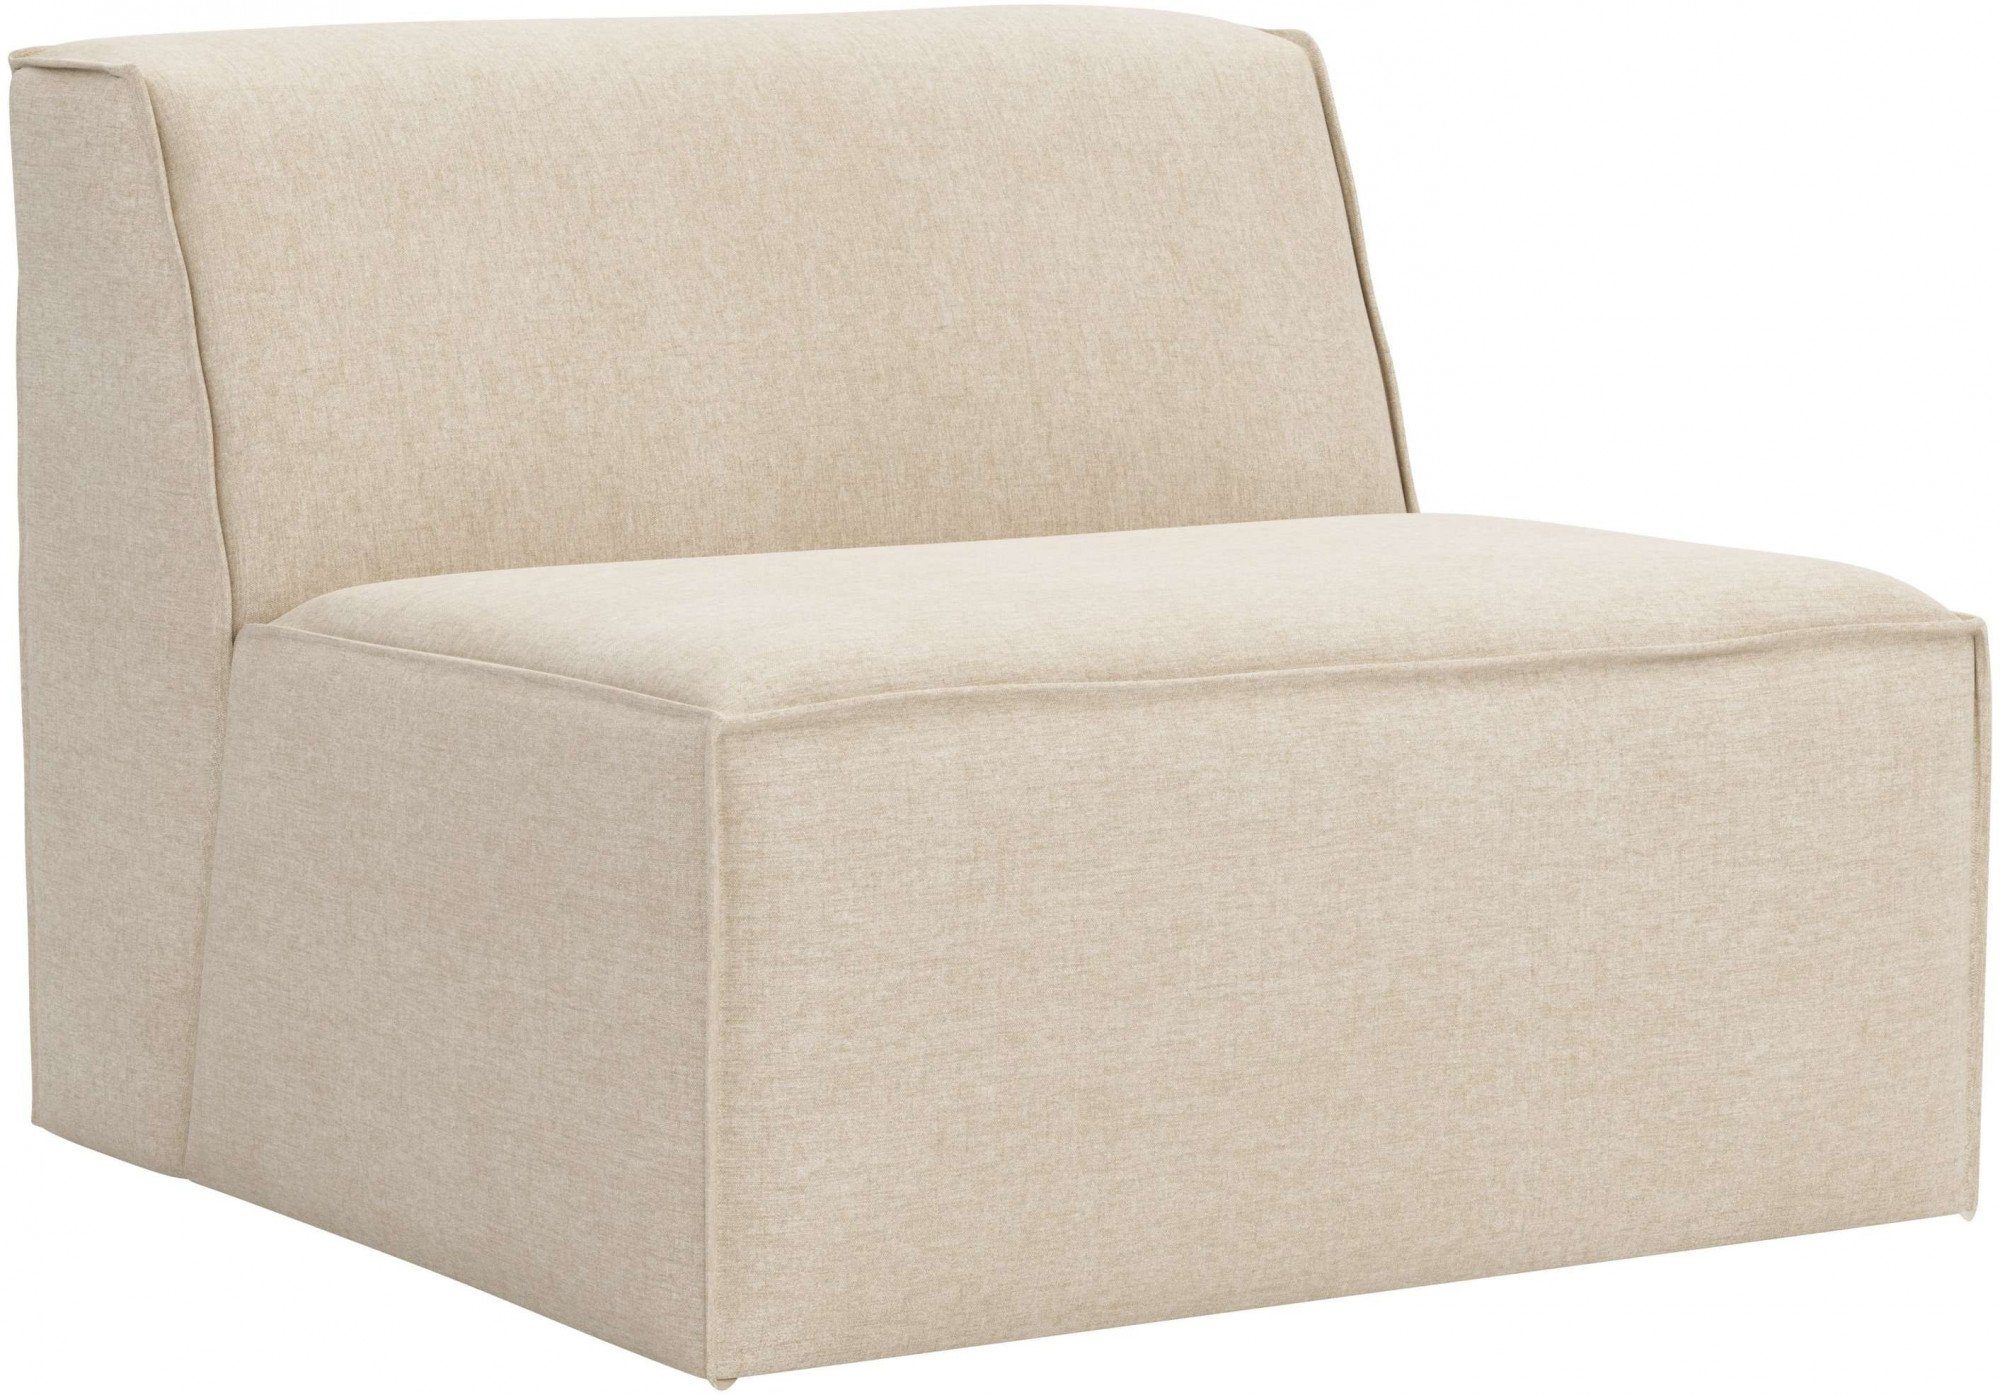 RAUM.ID Sofa-Mittelelement Norvid, modular, Modulen an große natural Taschenfederkern, mit Auswahl